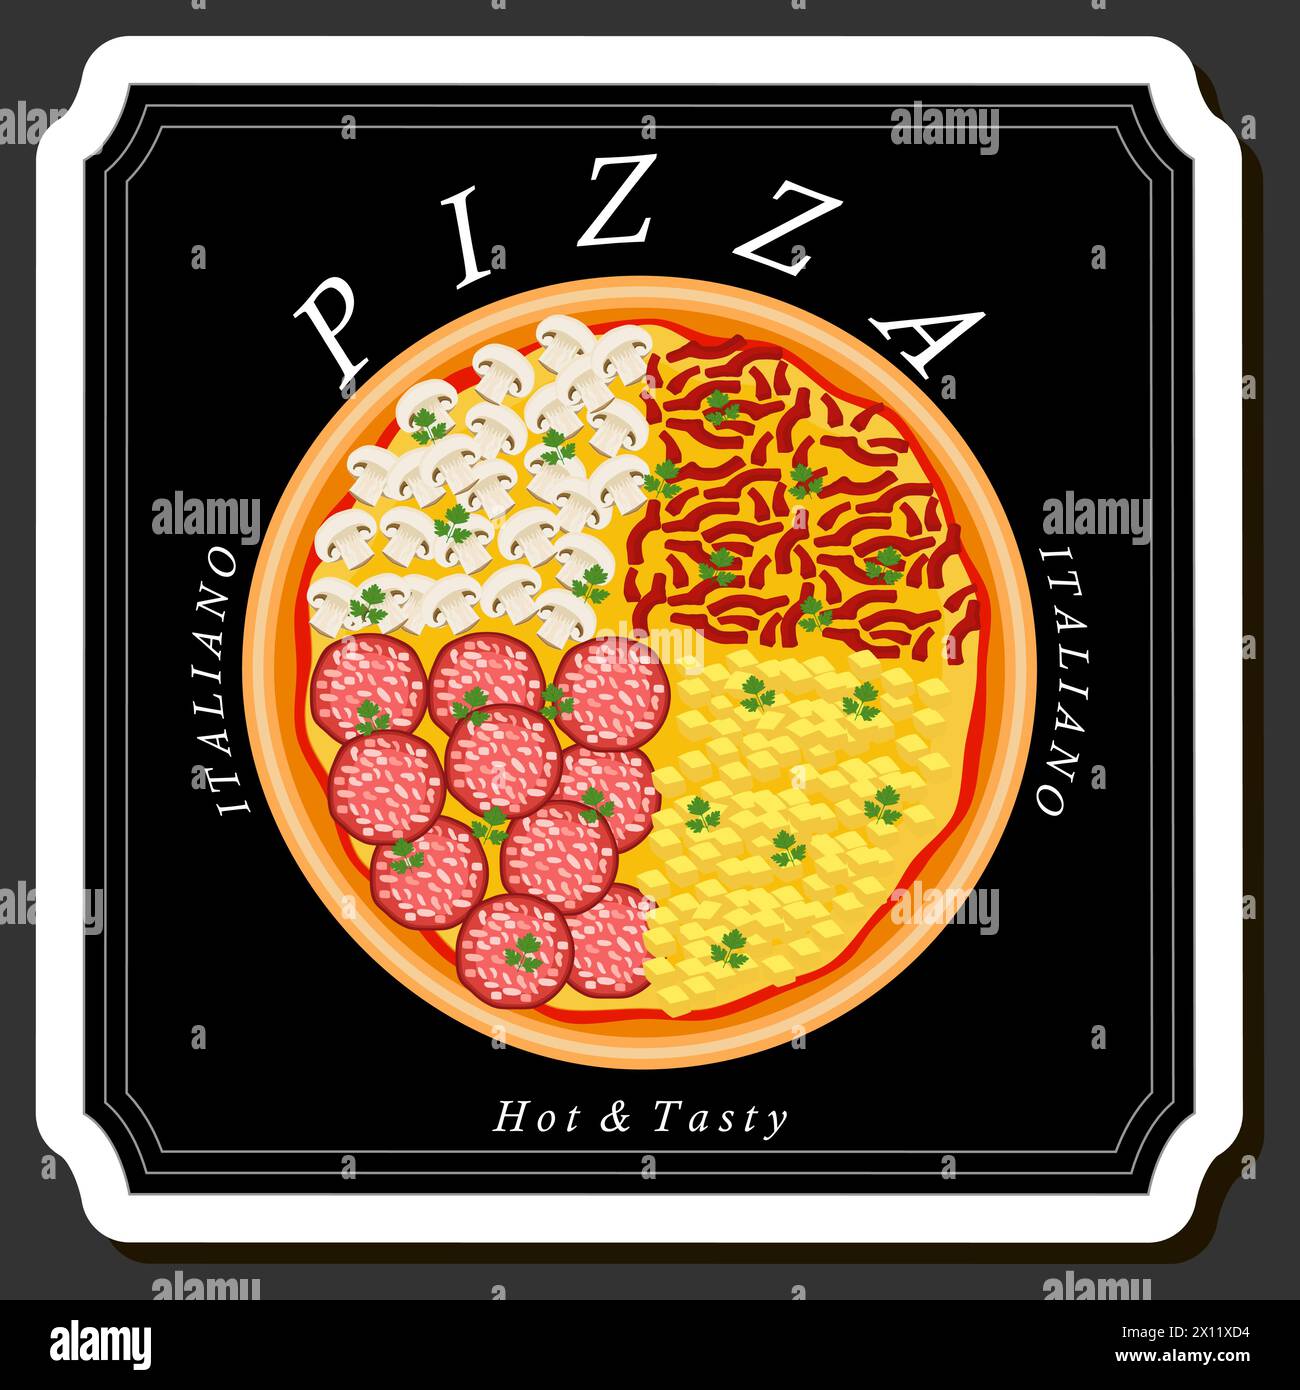 Ilustración sobre el tema Gran pizza sabrosa caliente al menú de pizzería, pizza italiana que consta de varios ingredientes como masa crujiente al horno, tomate rojo, GE Ilustración del Vector